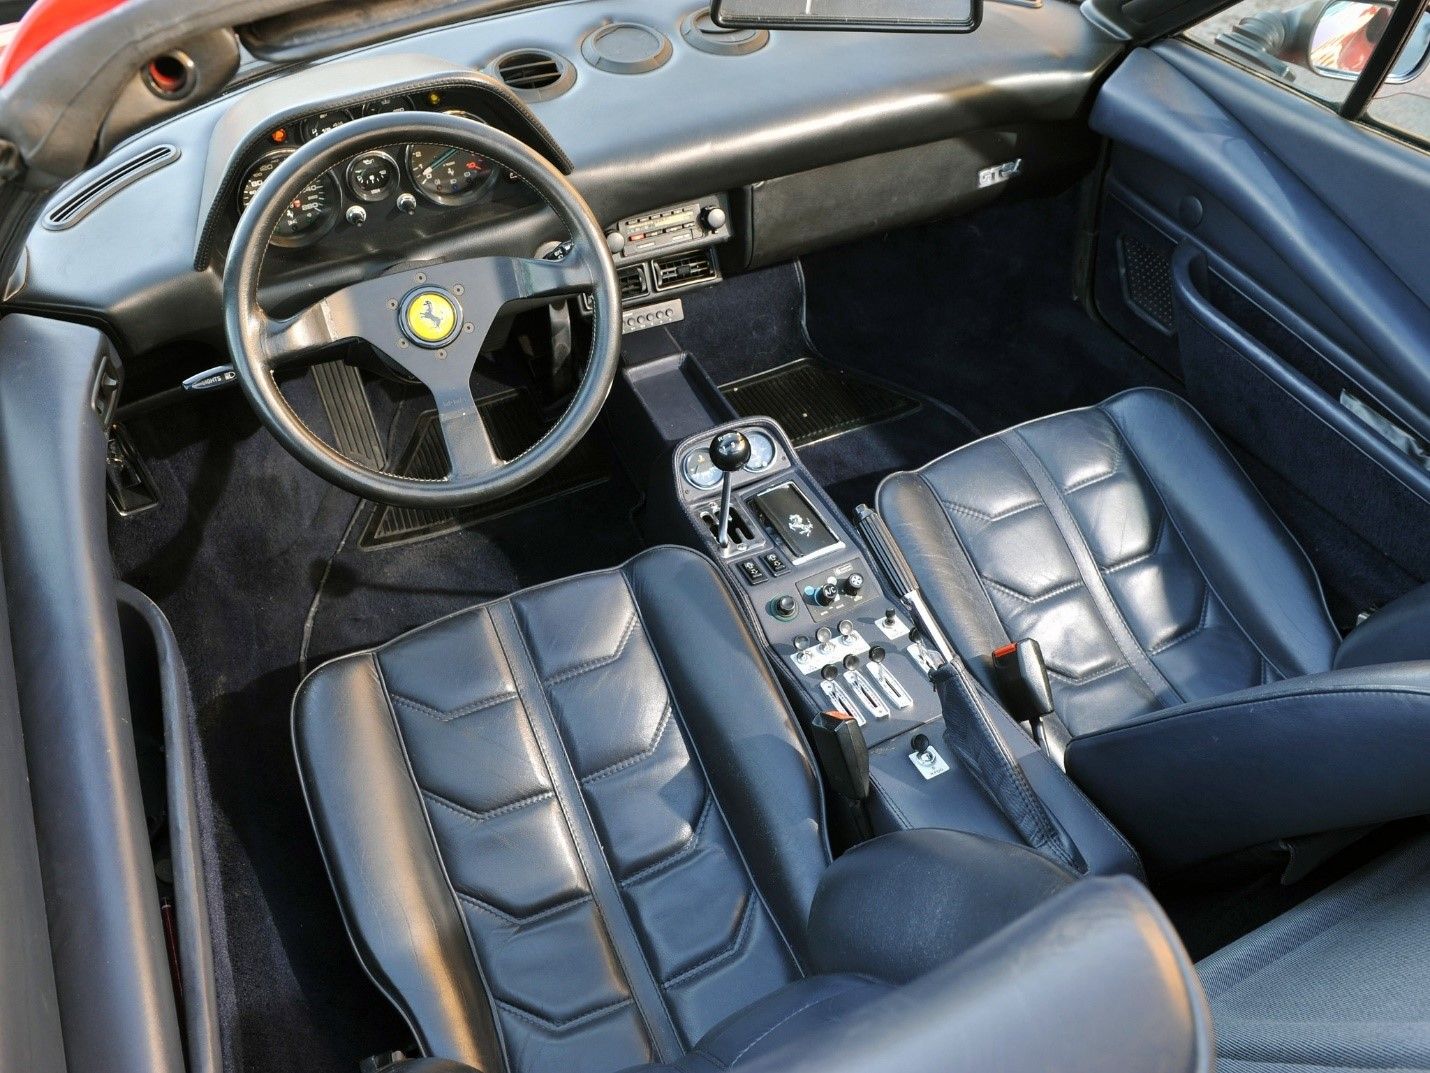 Ferrari 308 GTS shifter